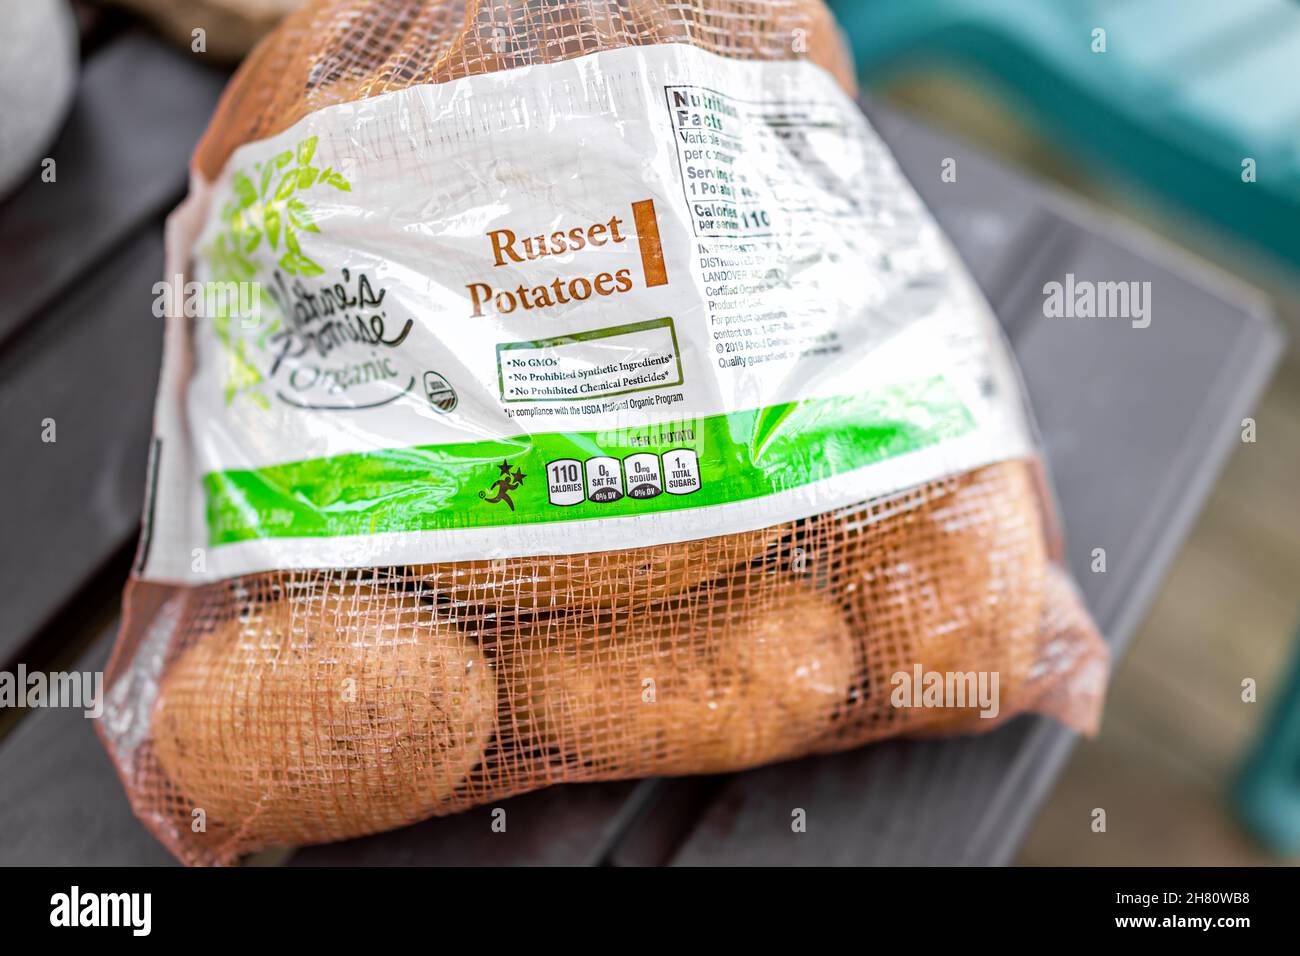 Sugar Mountain, États-Unis - 31 mai 2021 : étiquette sur le sac d'emballage des pommes de terre russet achetées de la marque nature's Promise bio des magasins Hanaford achetés Banque D'Images